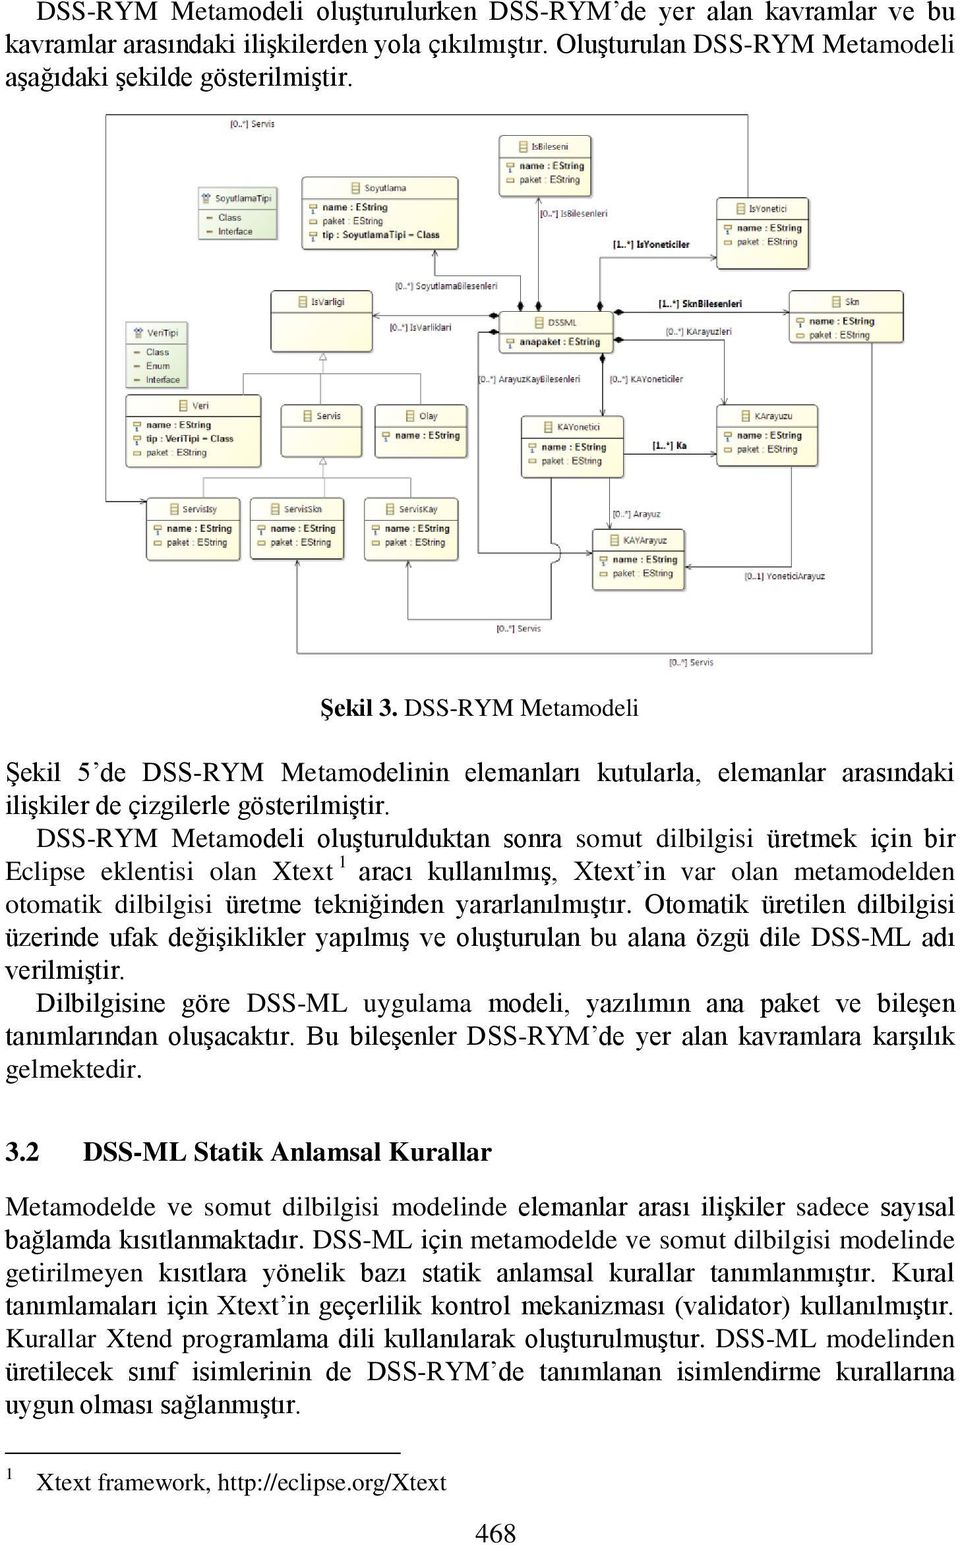 DSS-RYM Metamodeli oluşturulduktan sonra somut dilbilgisi üretmek için bir Eclipse eklentisi olan Xtext 1 aracı kullanılmış, Xtext in var olan metamodelden otomatik dilbilgisi üretme tekniğinden